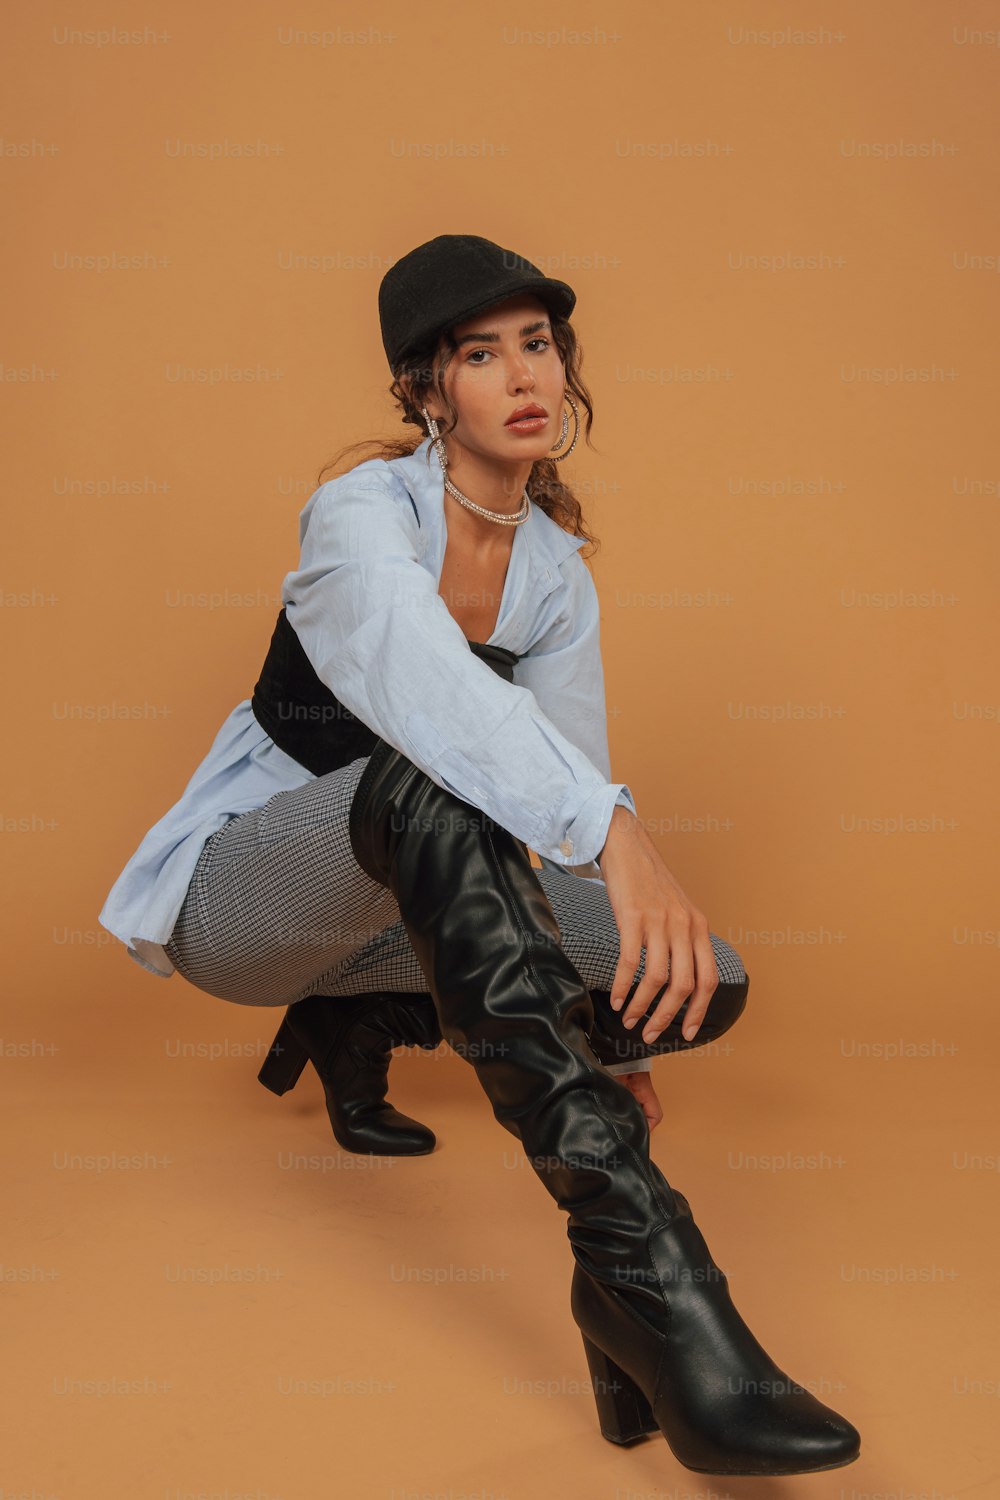 Una mujer sentada en el suelo con botas negras